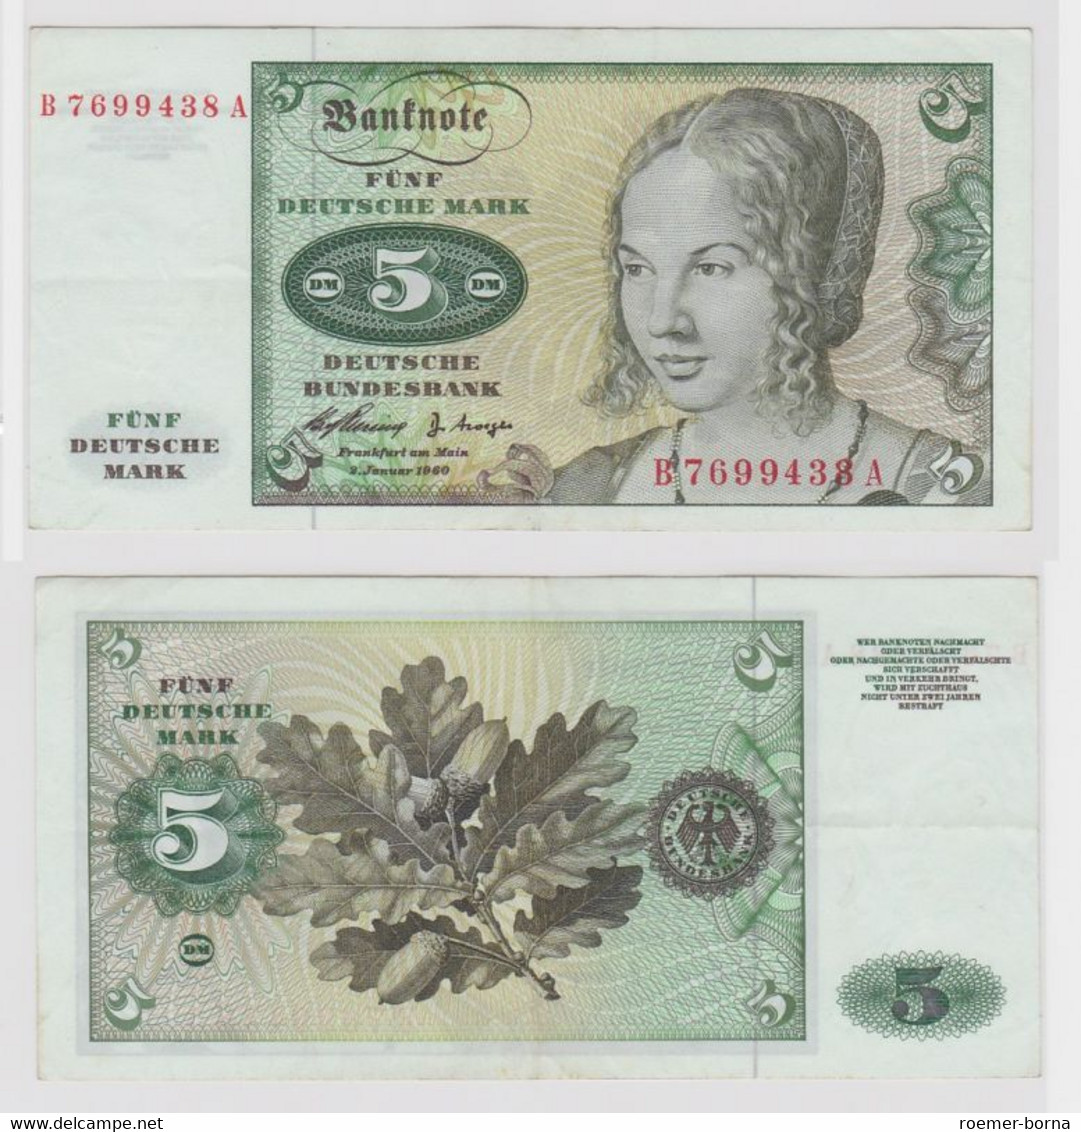 T146115 Banknote 5 DM Deutsche Mark Ro. 262e Schein 2.Jan. 1960 KN B 7699438 A - 5 DM